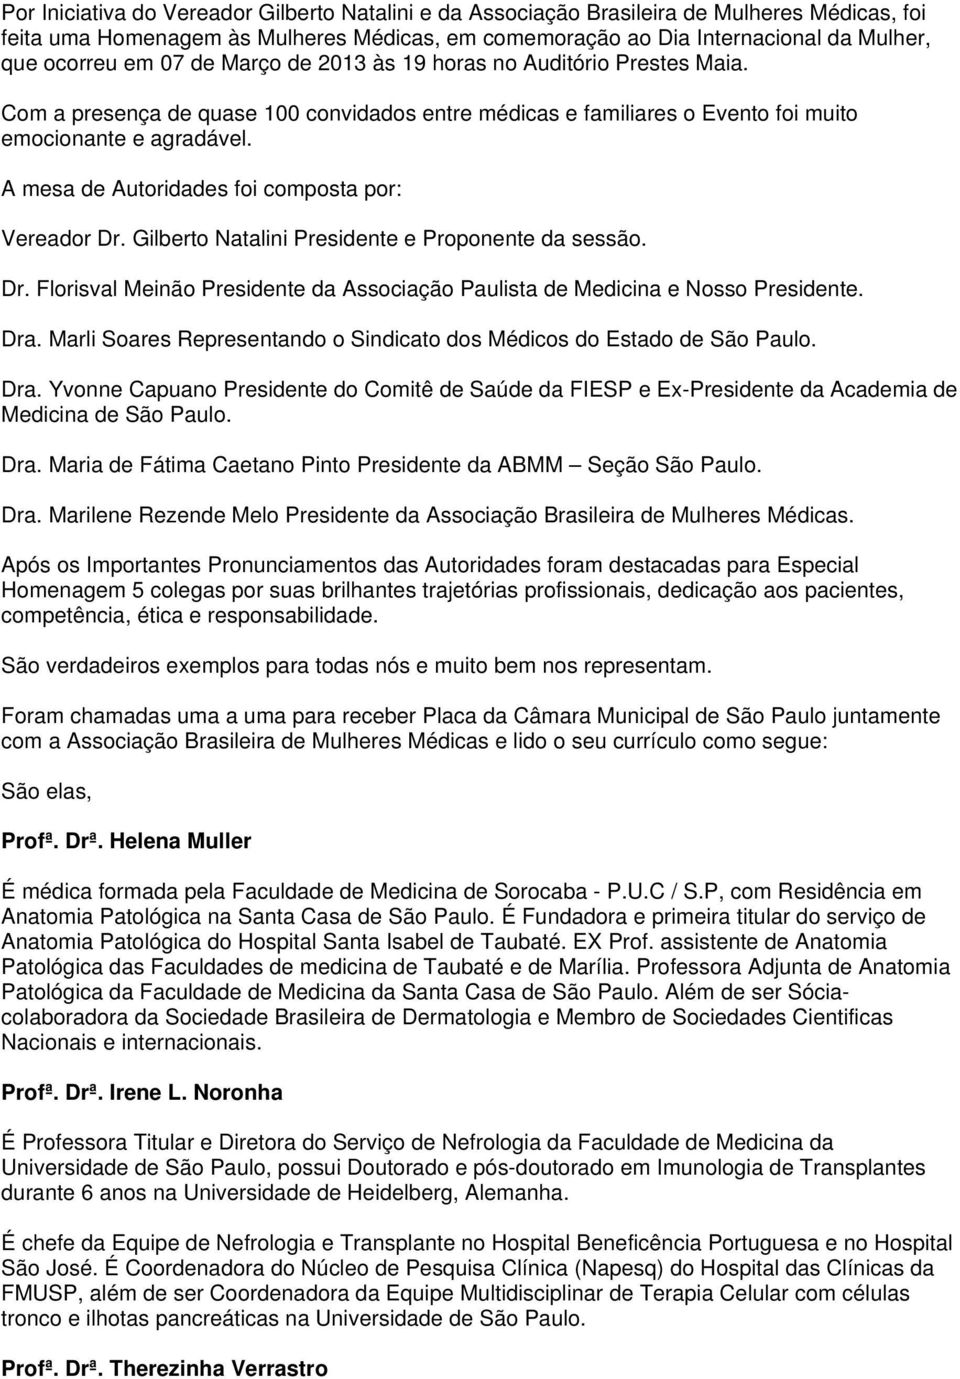 A mesa de Autoridades foi composta por: Vereador Dr. Gilberto Natalini Presidente e Proponente da sessão. Dr. Florisval Meinão Presidente da Associação Paulista de Medicina e Nosso Presidente. Dra.